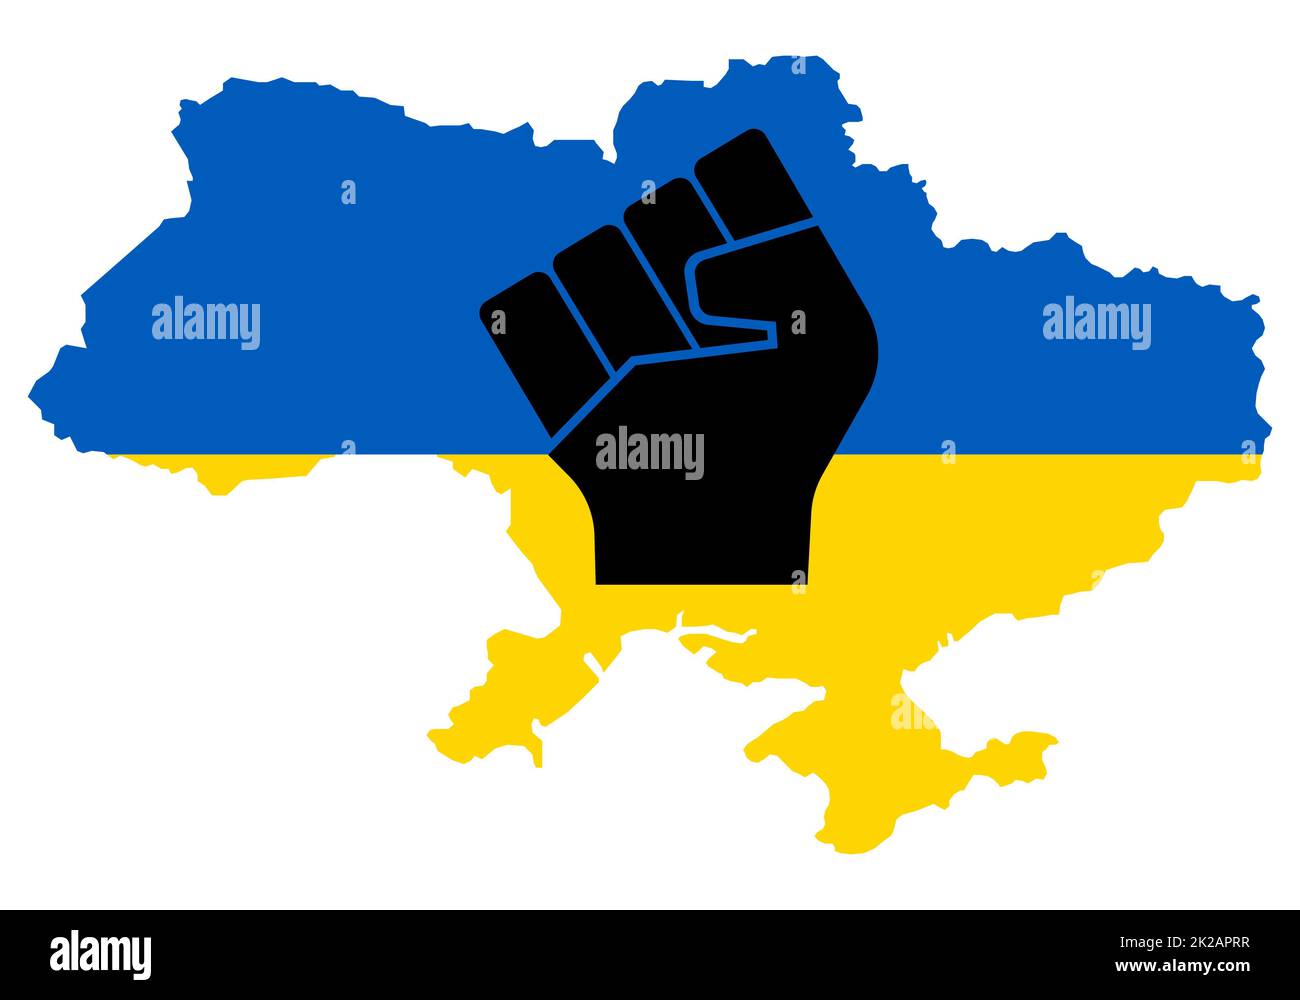 Starke Ukraine. Erhabene Faust auf der Karte in blau und gelb, ukrainische Nationalfarbe. Freiheit und Unterstützung der ukrainischen Nation. Patriotischer Geist - aufsteigende menschliche Hand. Beenden Sie den Krieg zwischen Russland und dem Frieden in der Ukraine. Stockfoto